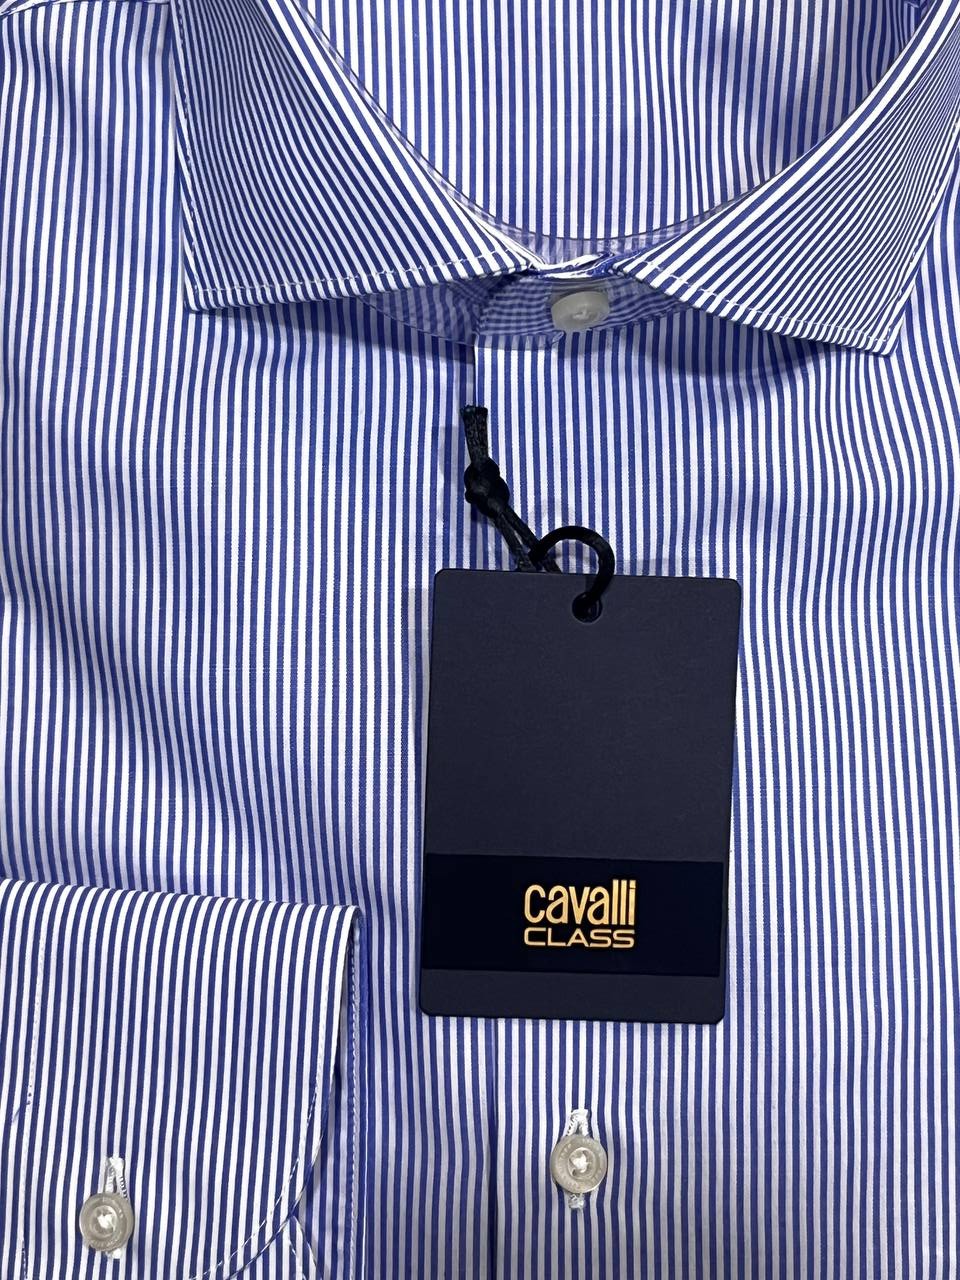 Cavalli Class Men's Shirt